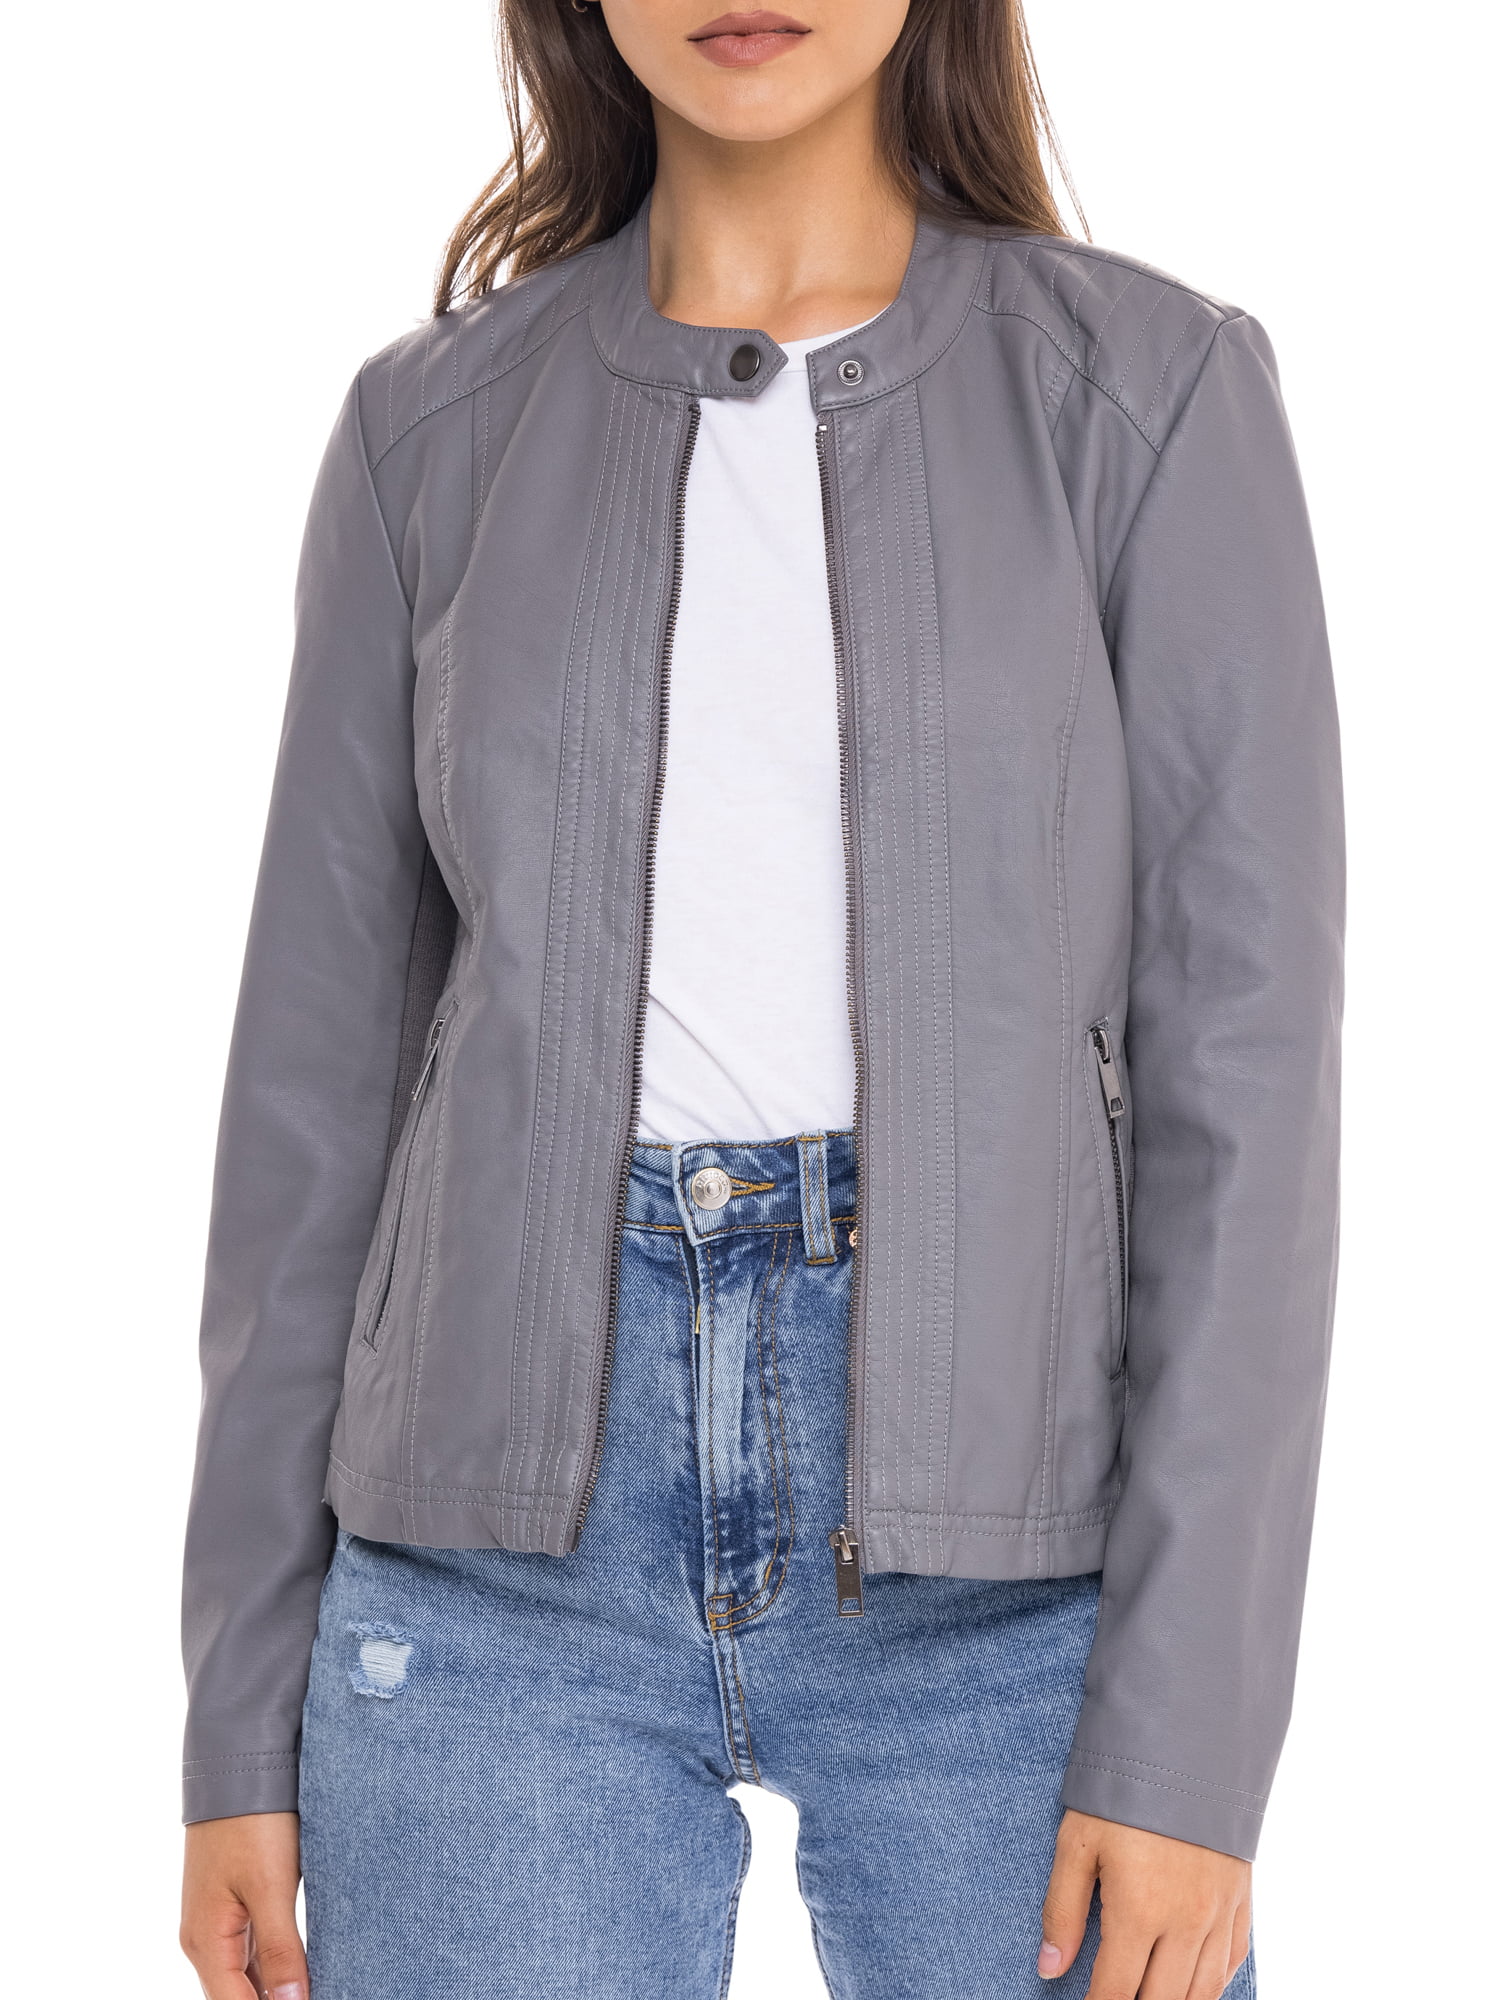 kids girls Fashion PU leather outwear zipper biker jackets 3-15Y Lapel coat